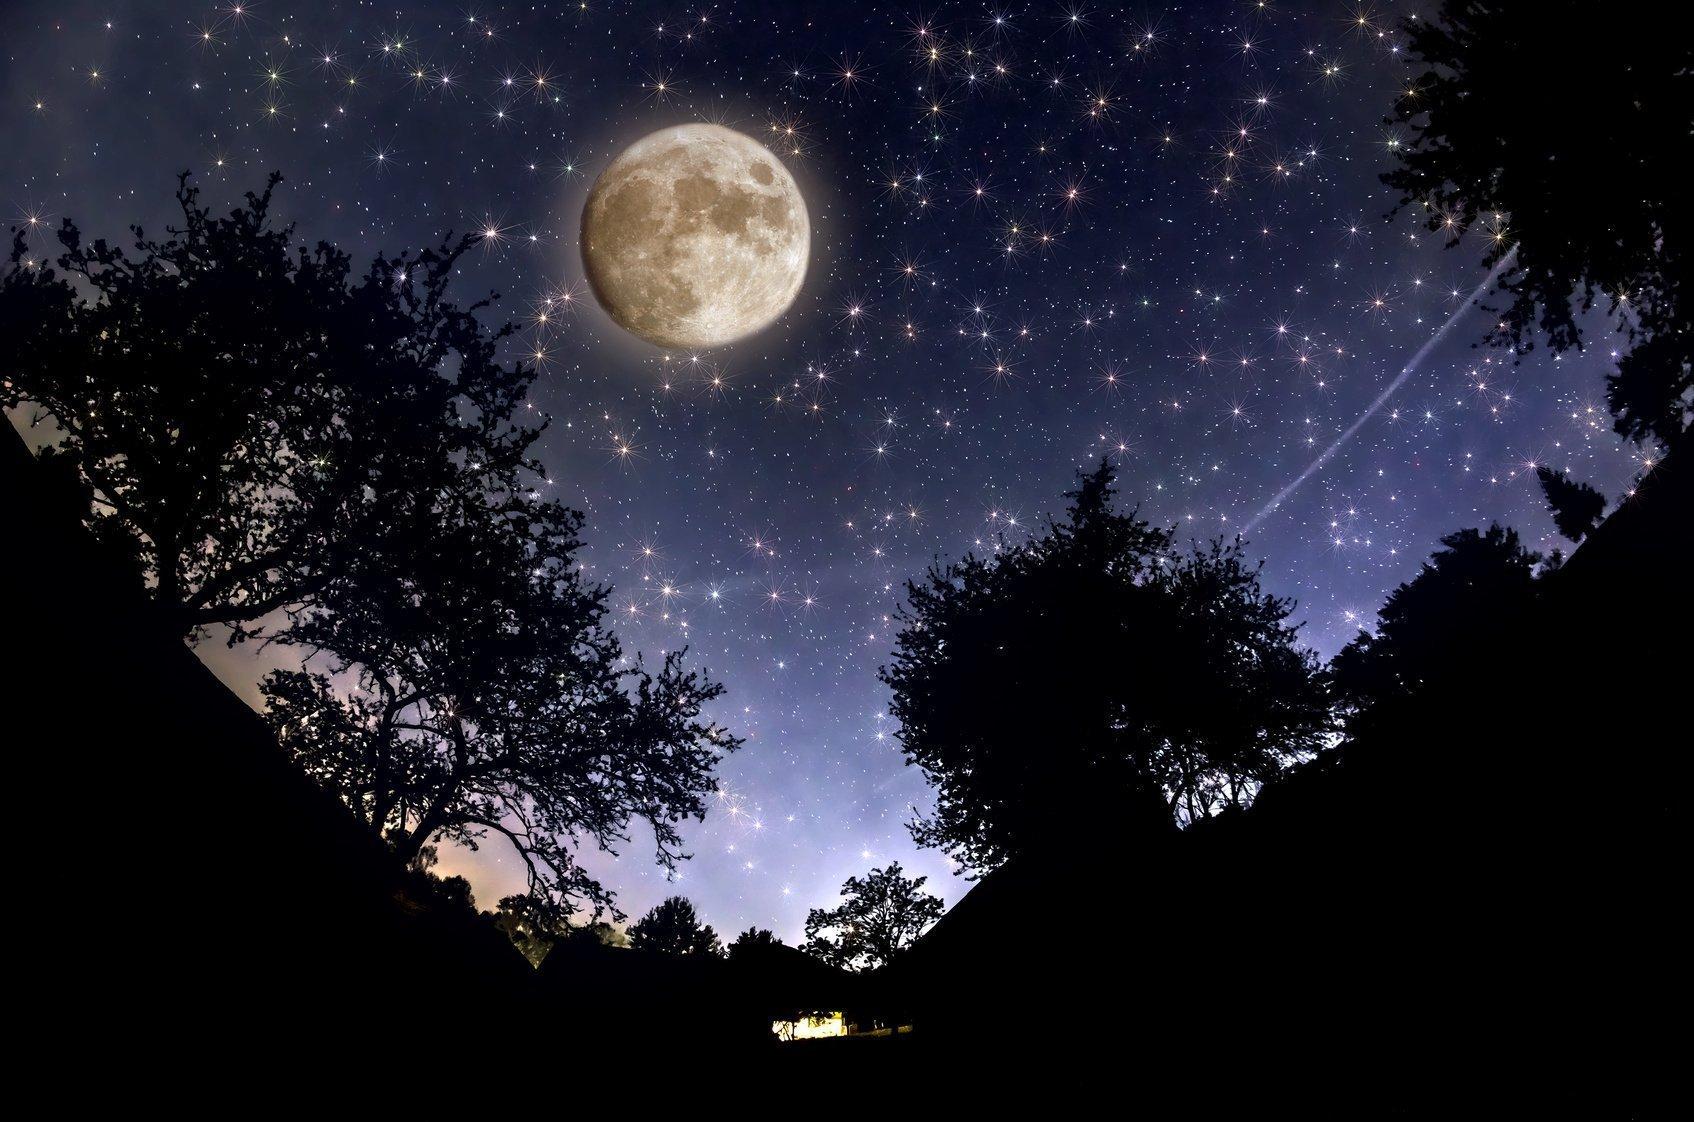 картинки : звезда, космос, атмосфера, темно, Темнота, Галактика, ночное небо,  Северное сияние, Астрология, голубое небо, наука, Астрономия, Вселенная,  звездное небо, Полночь, Звезды ночного неба 1809x1206 - - 853218 - красивые  картинки - PxHere